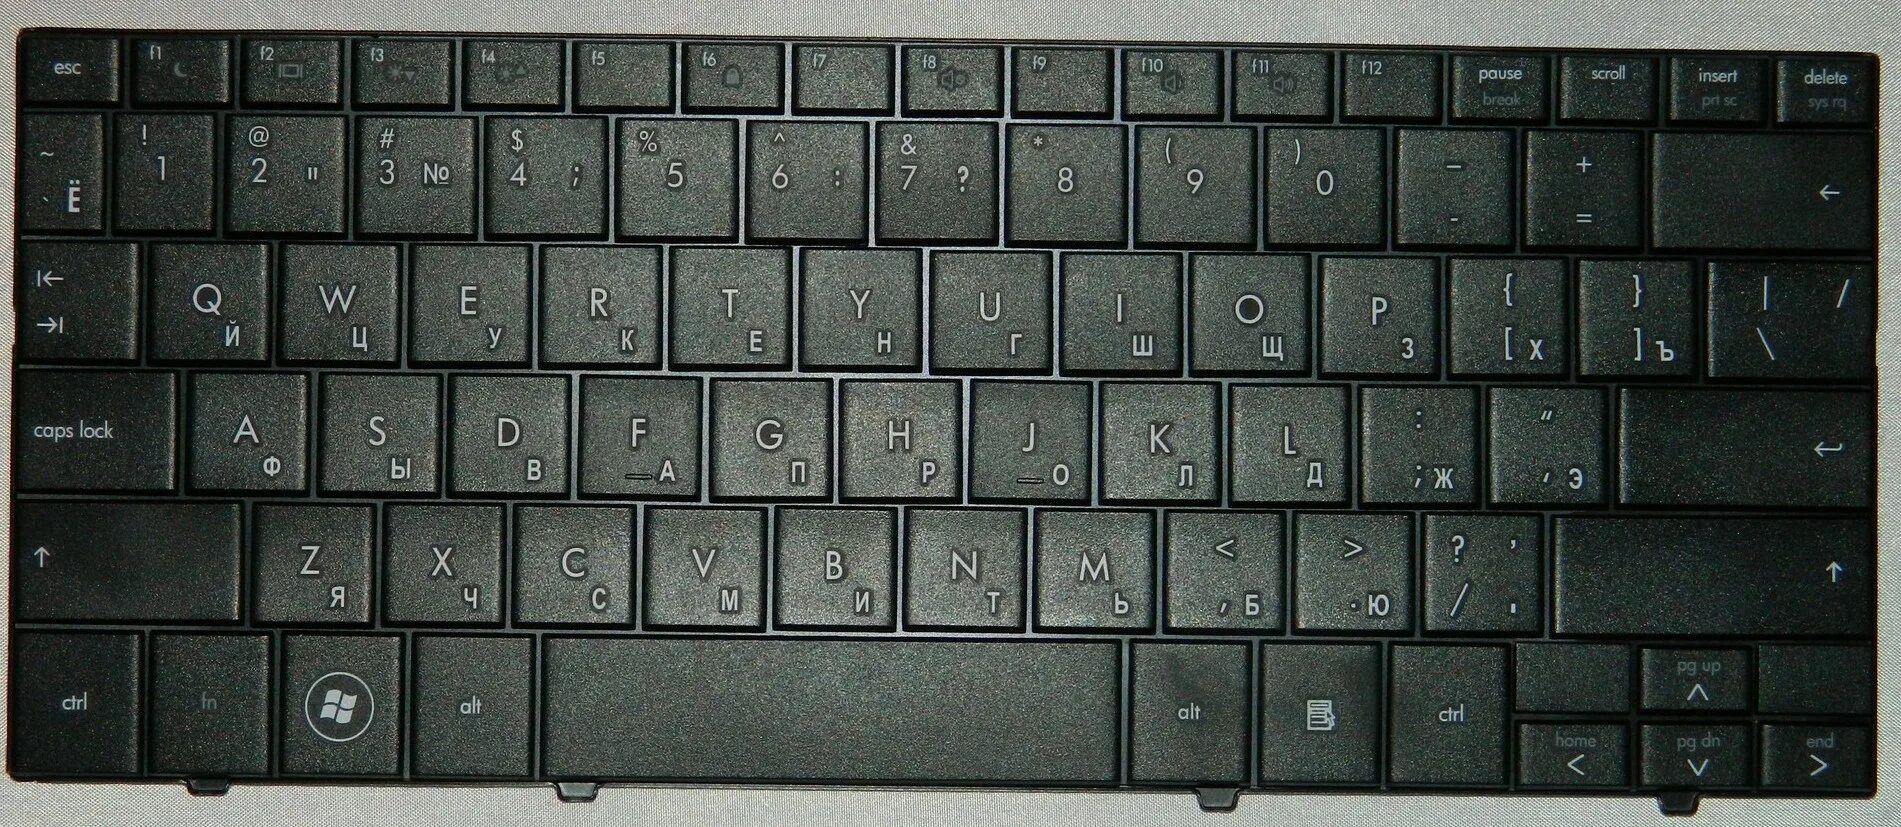 Раскладка клавиатуры Compaq. Раскладка клавиатуры фото крупным планом